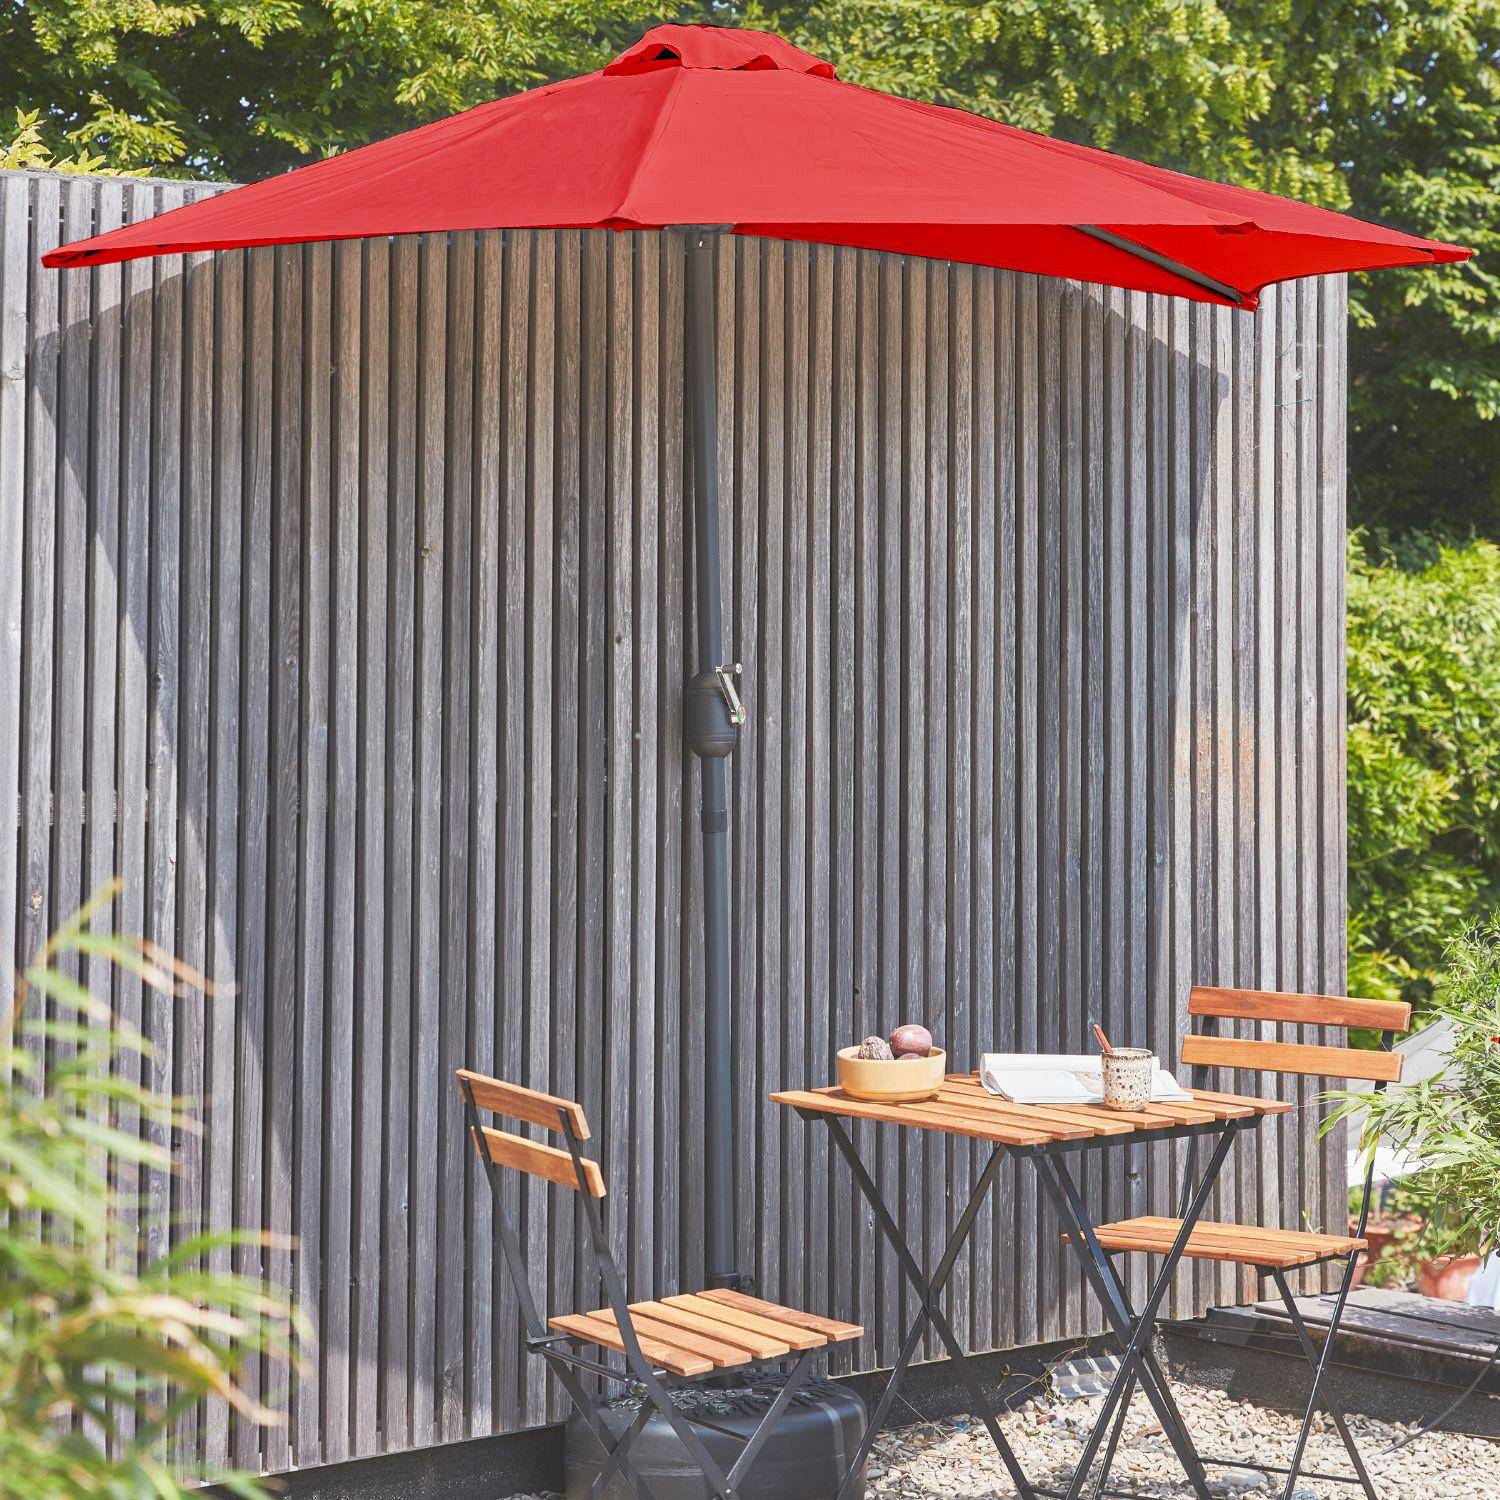  Parasol para balcón Ø250cm  – CALVI – Pequeño parasol recto, mástil en aluminio con manivela, tela color rojo Photo1